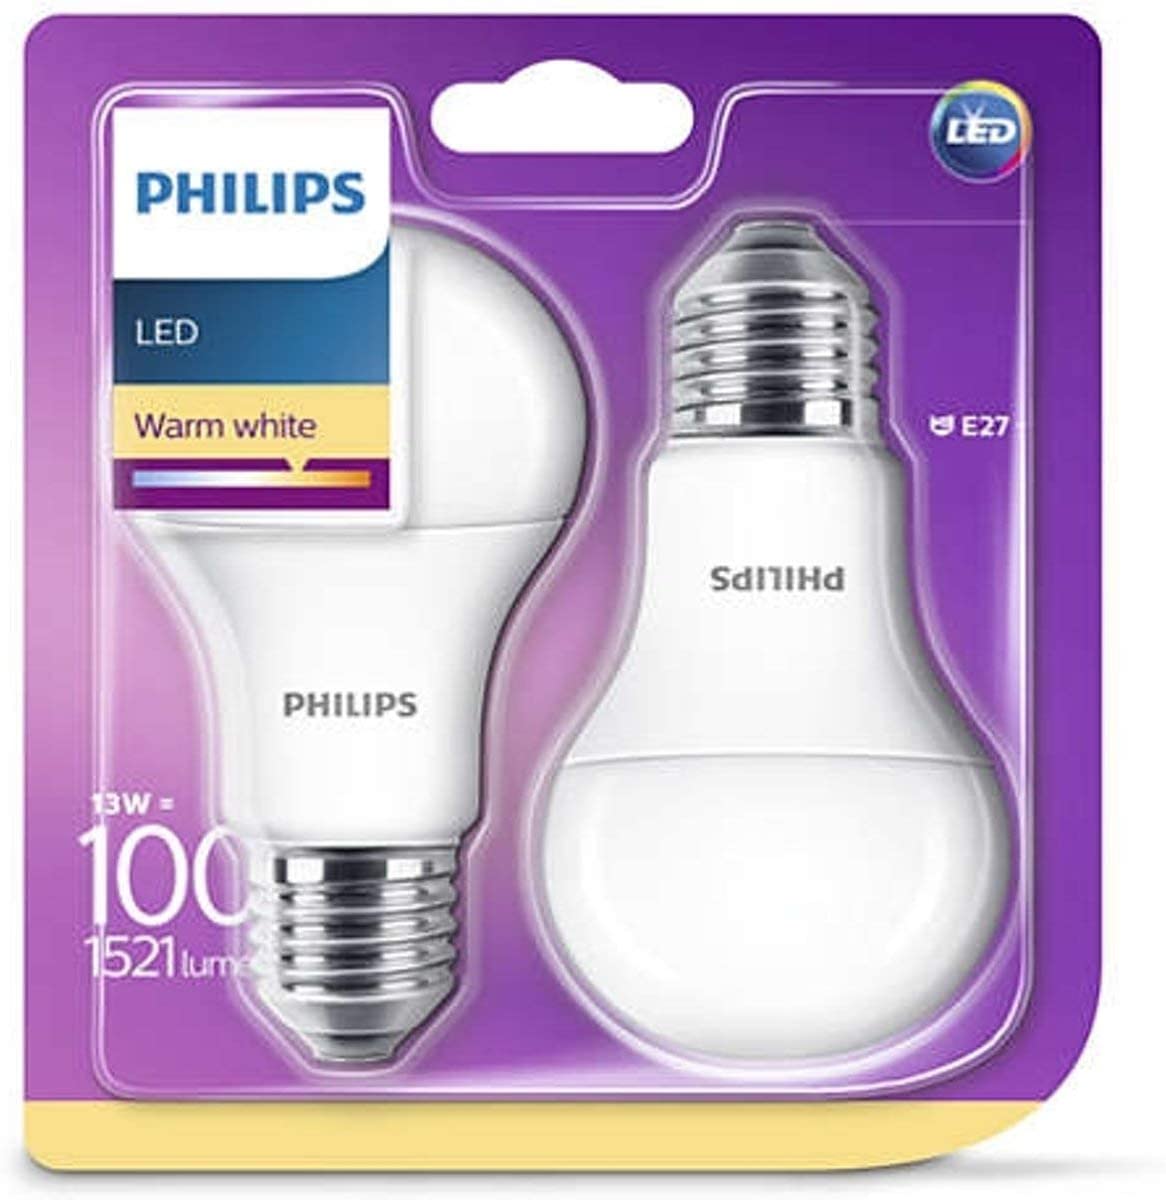 Philips Lighting 929001234561 Philips Lighting Lampadina LED, Warm White Goccia, Attacco E27, 13 W Equivalenti a 100 W, 2700K, Blister Doppio, Bianco, 2 unità